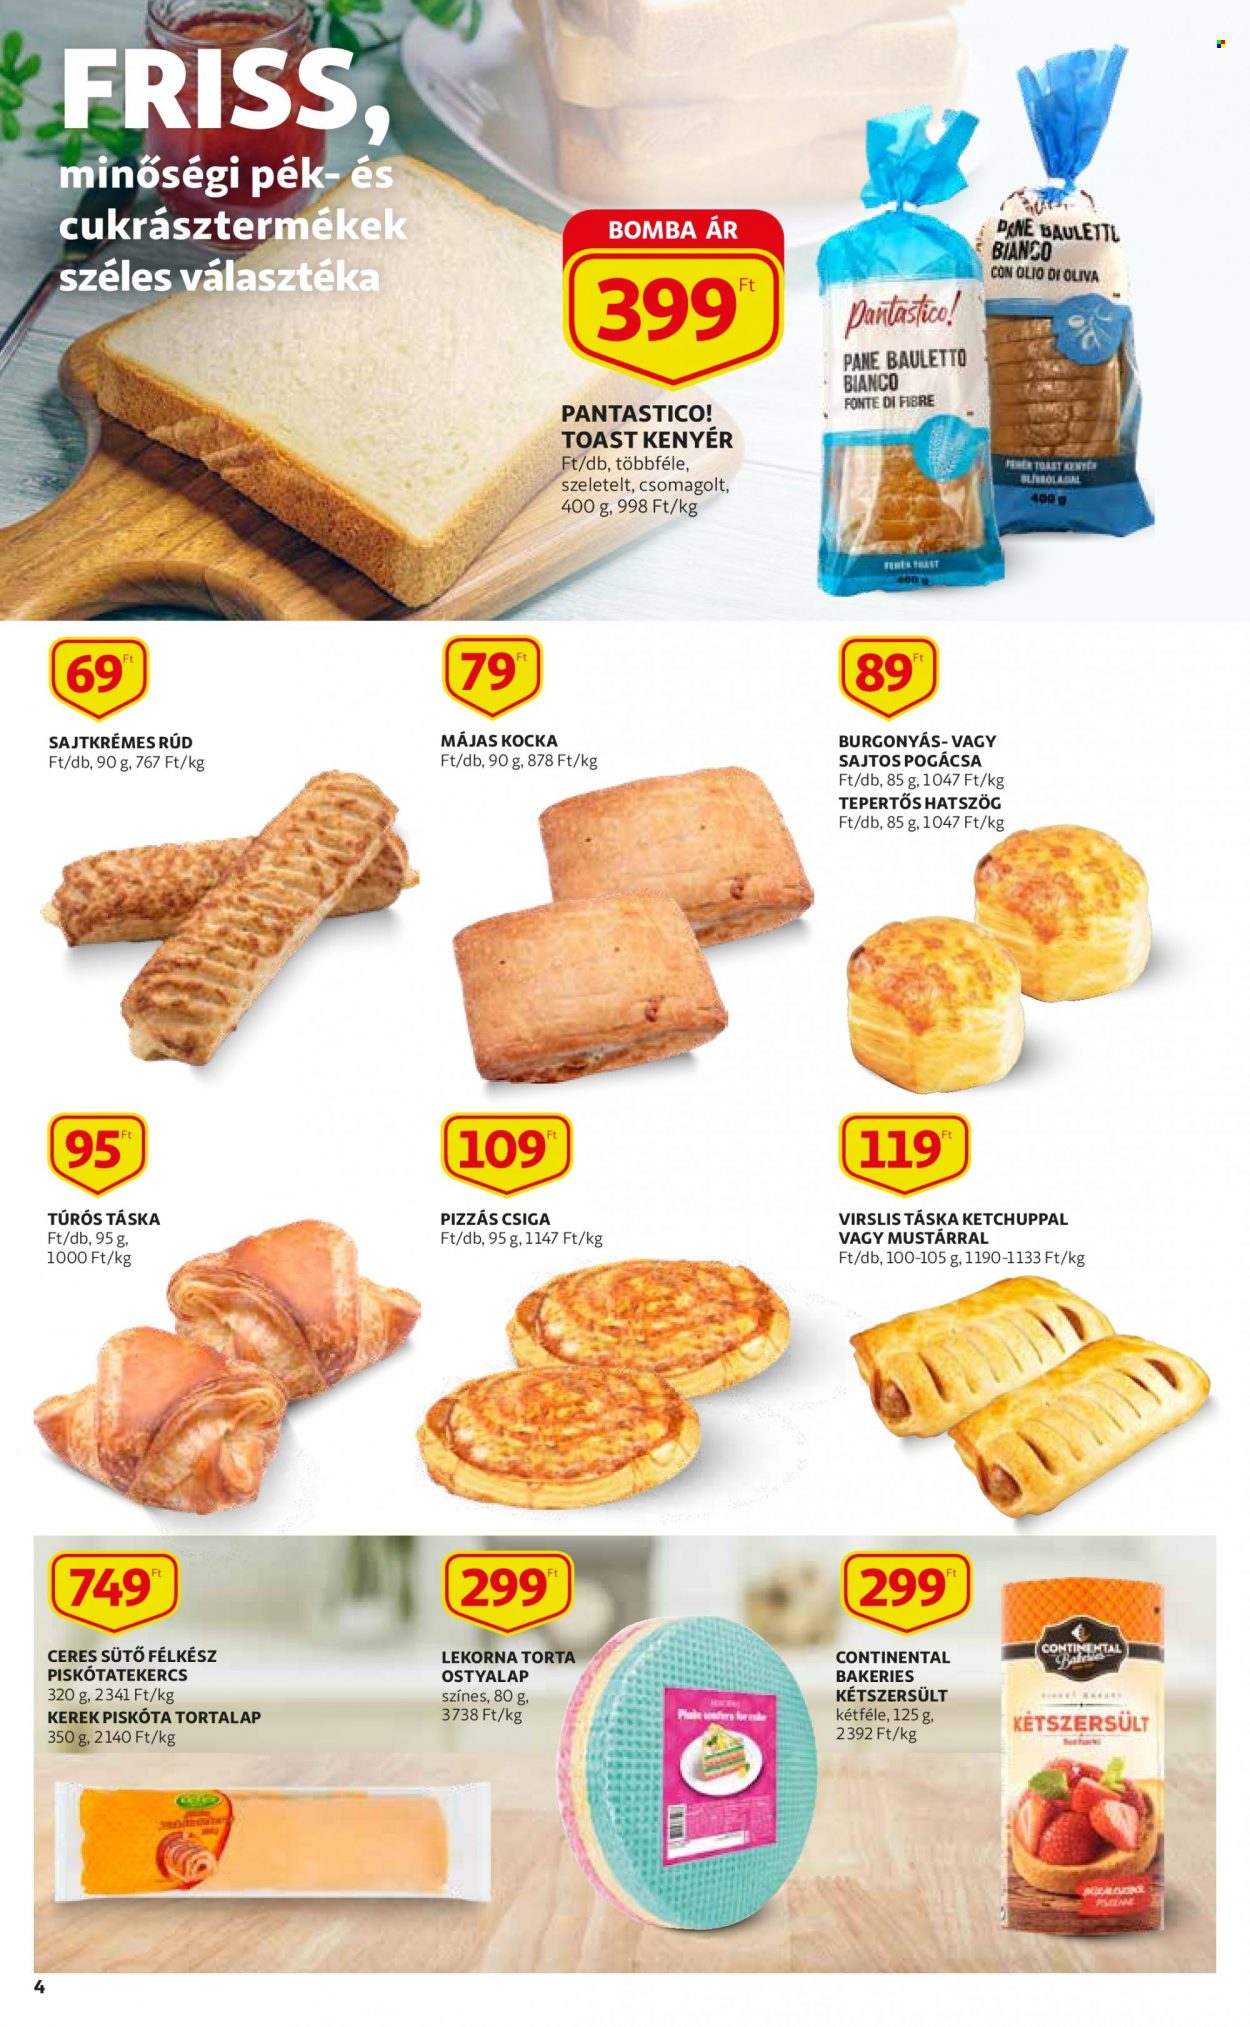 thumbnail - Auchan akciós újsága  - 2021.12.02 - 2021.12.08 - Akciós termékek - kenyér, sajtkrémes rúd, toast kenyér, tepertős hatszög, csiga, pogácsa, piskótatekercs, túrós táska, kétszersült, májas, torta, ostyalap, sütő, Continental.  4. Oldal